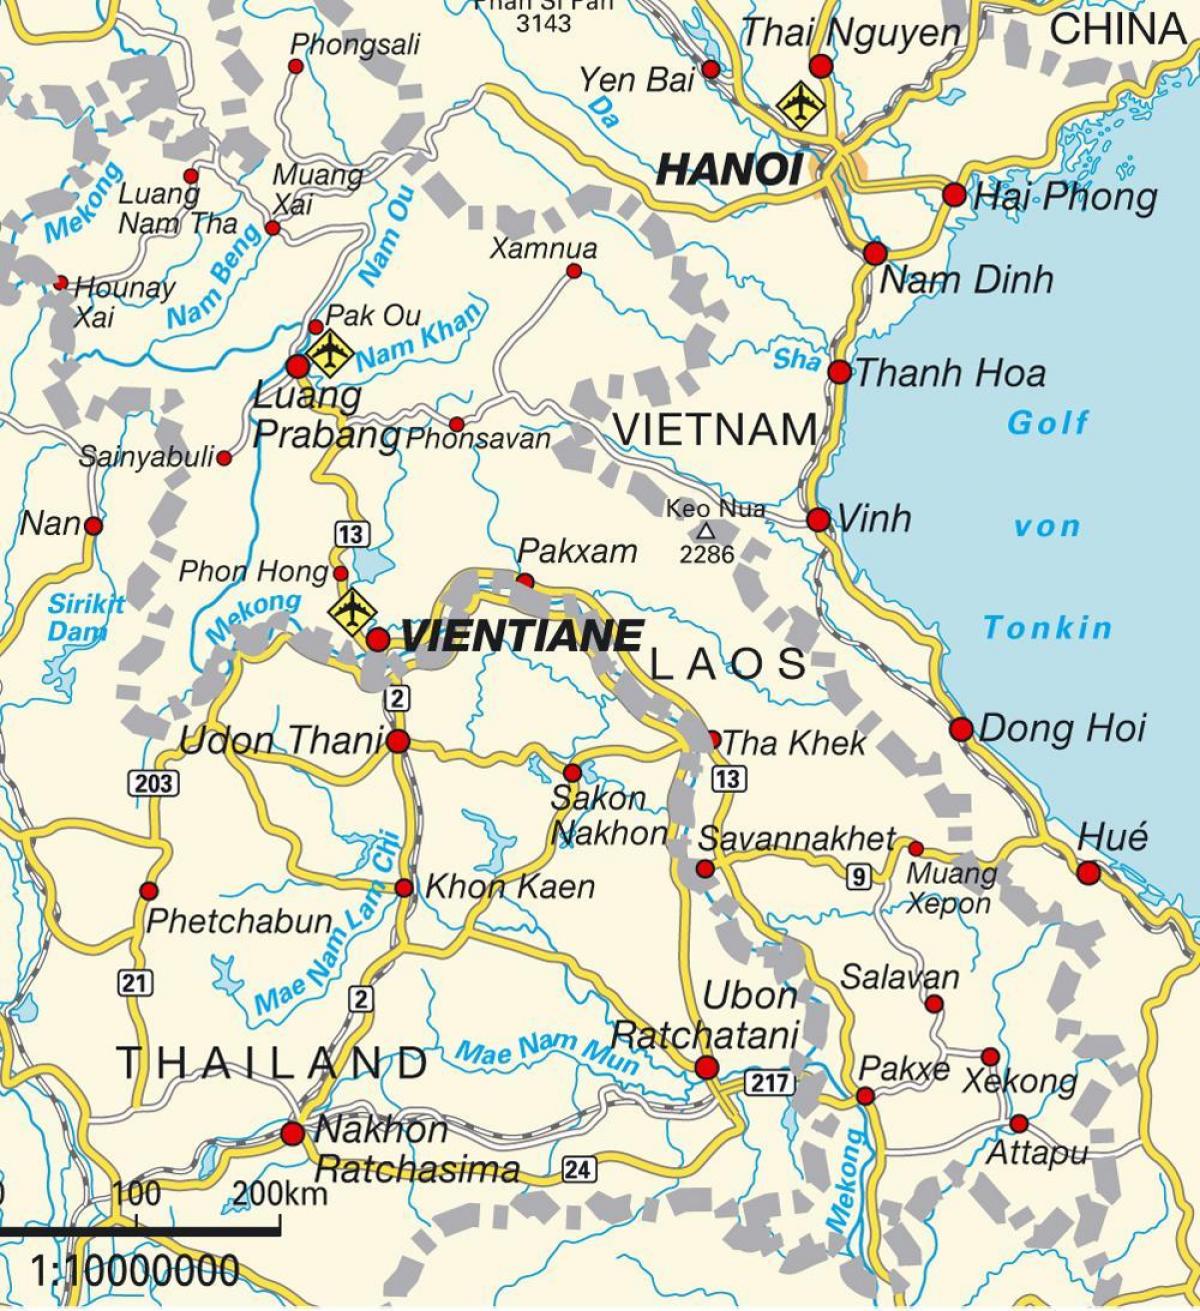 аеропорти Лаосу на карті